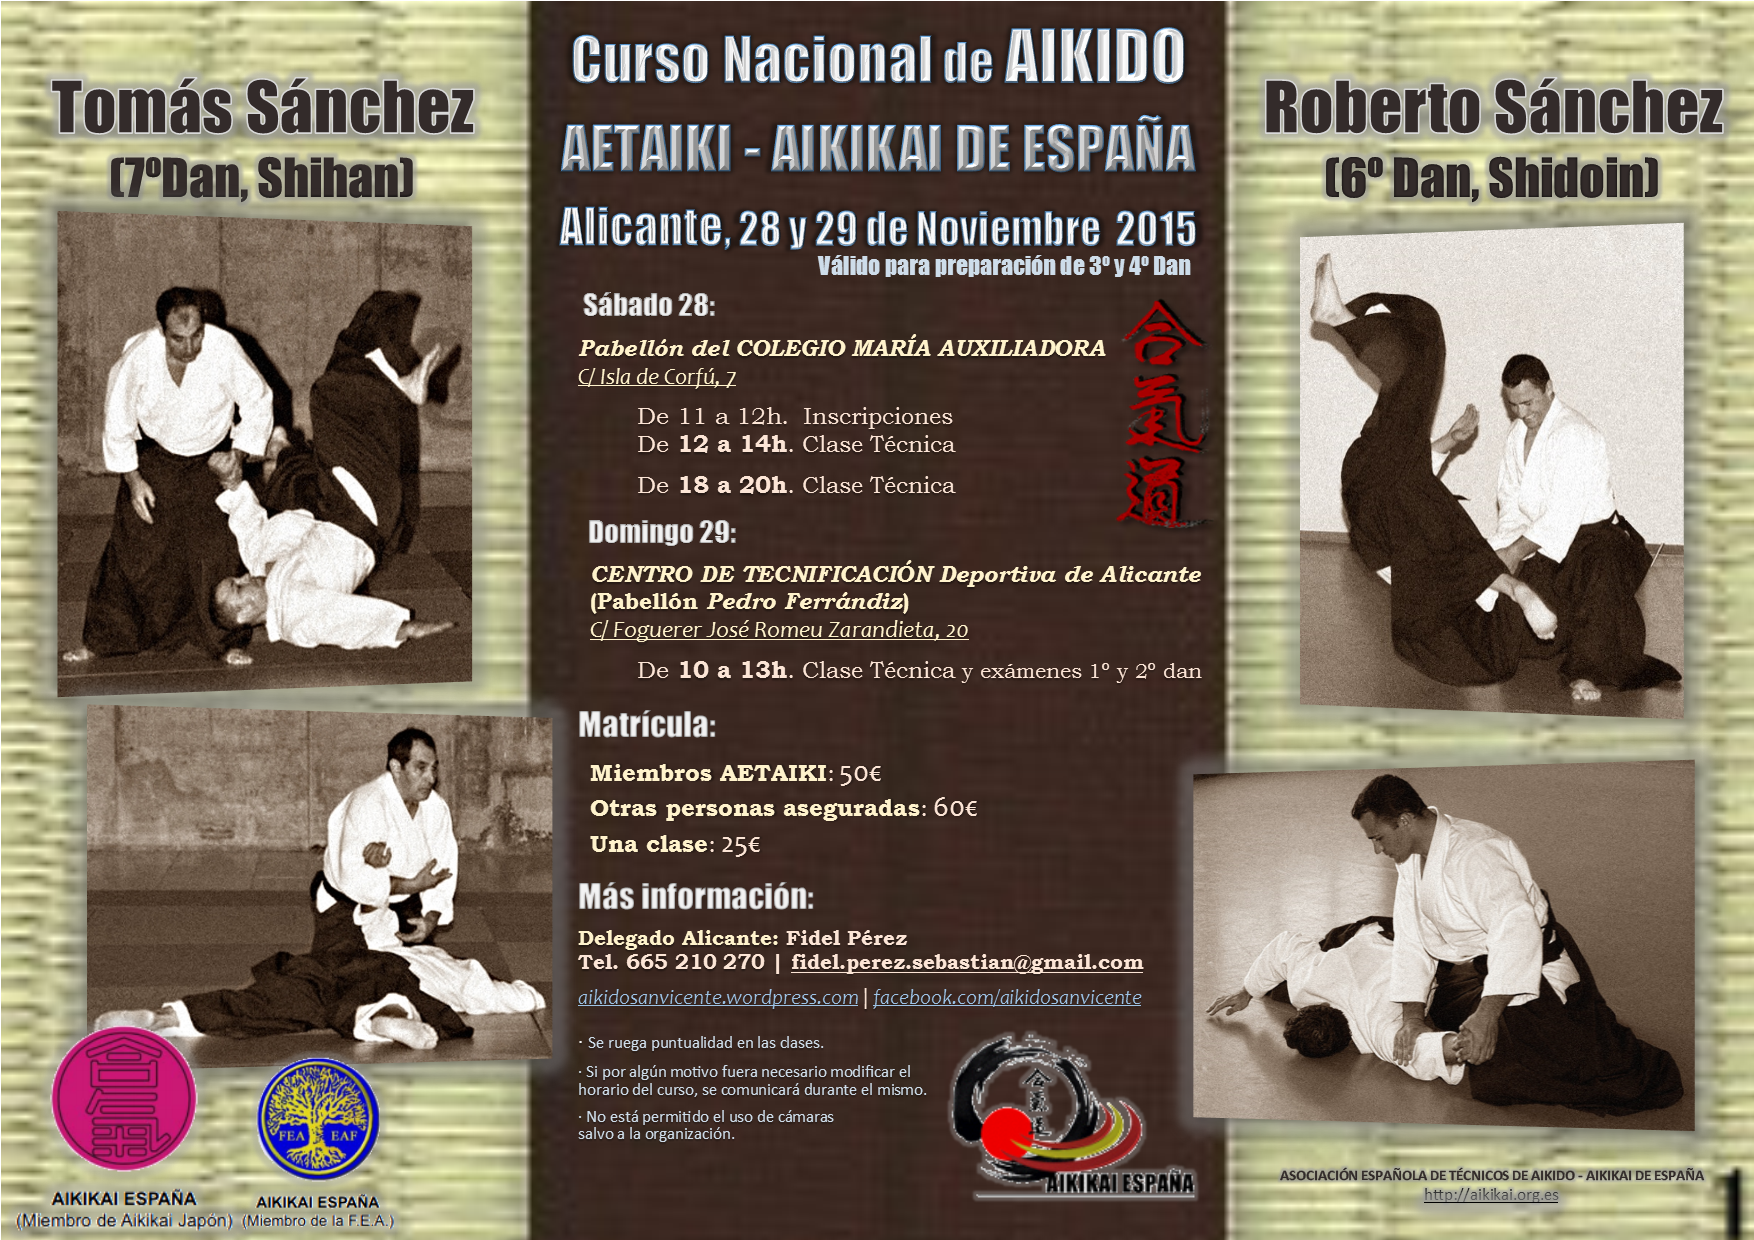 Curso Nacional de Aikido Aetaiki-Aikikai de España - Tomás Sánchez (7ºDan, Shihan) y Roberto Sánchez (6ºDan, Shidoin) - Alicante 2015